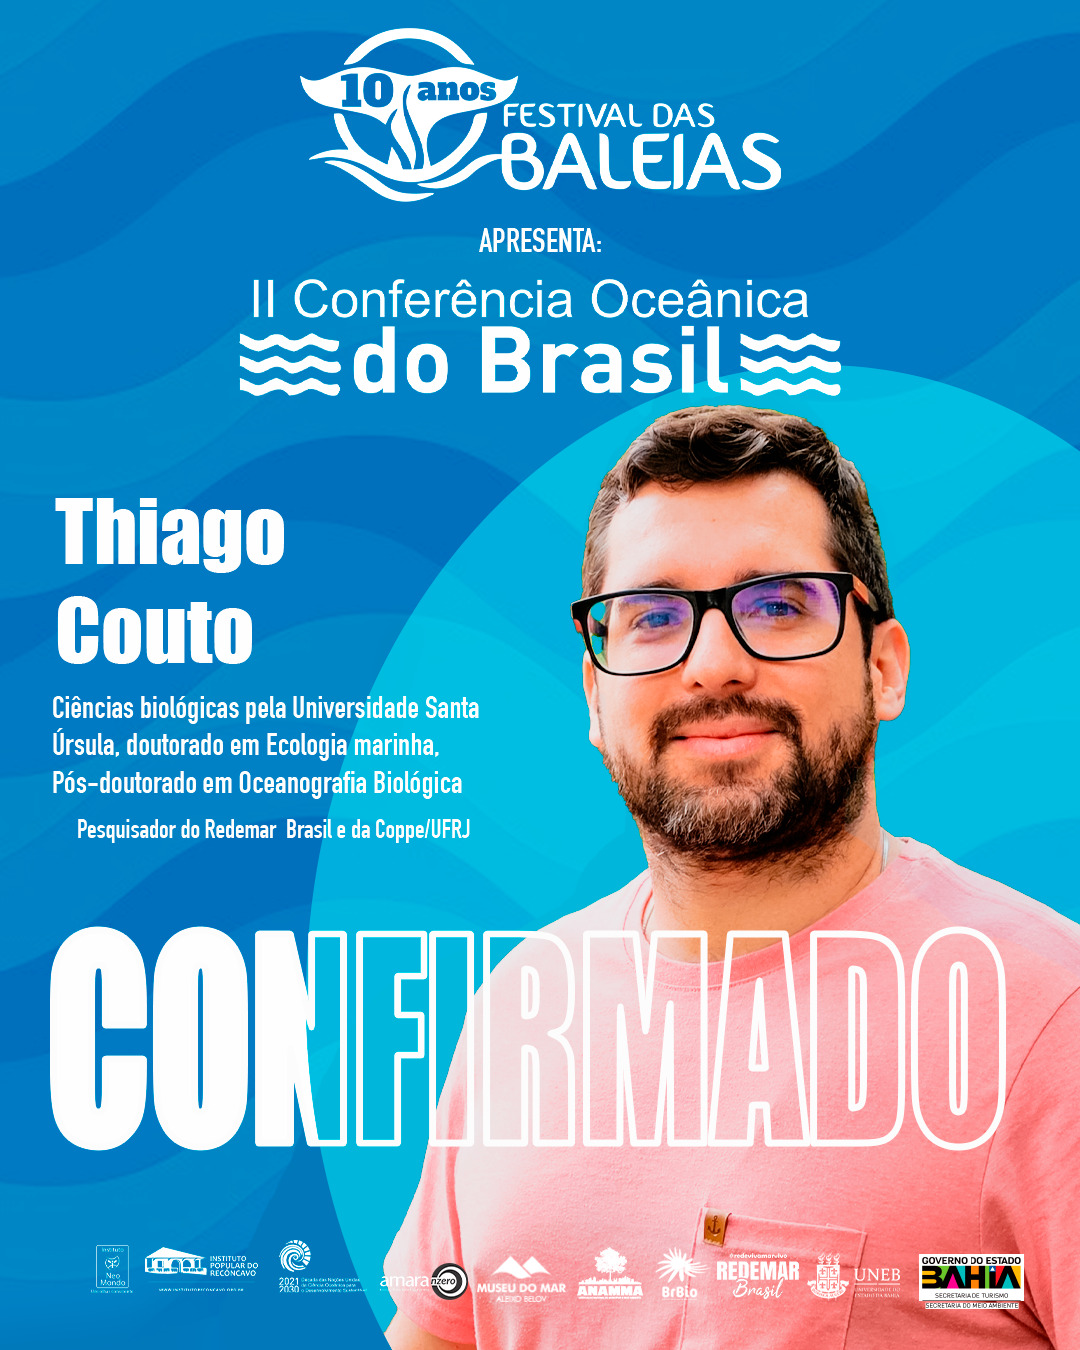 Thiago Couto